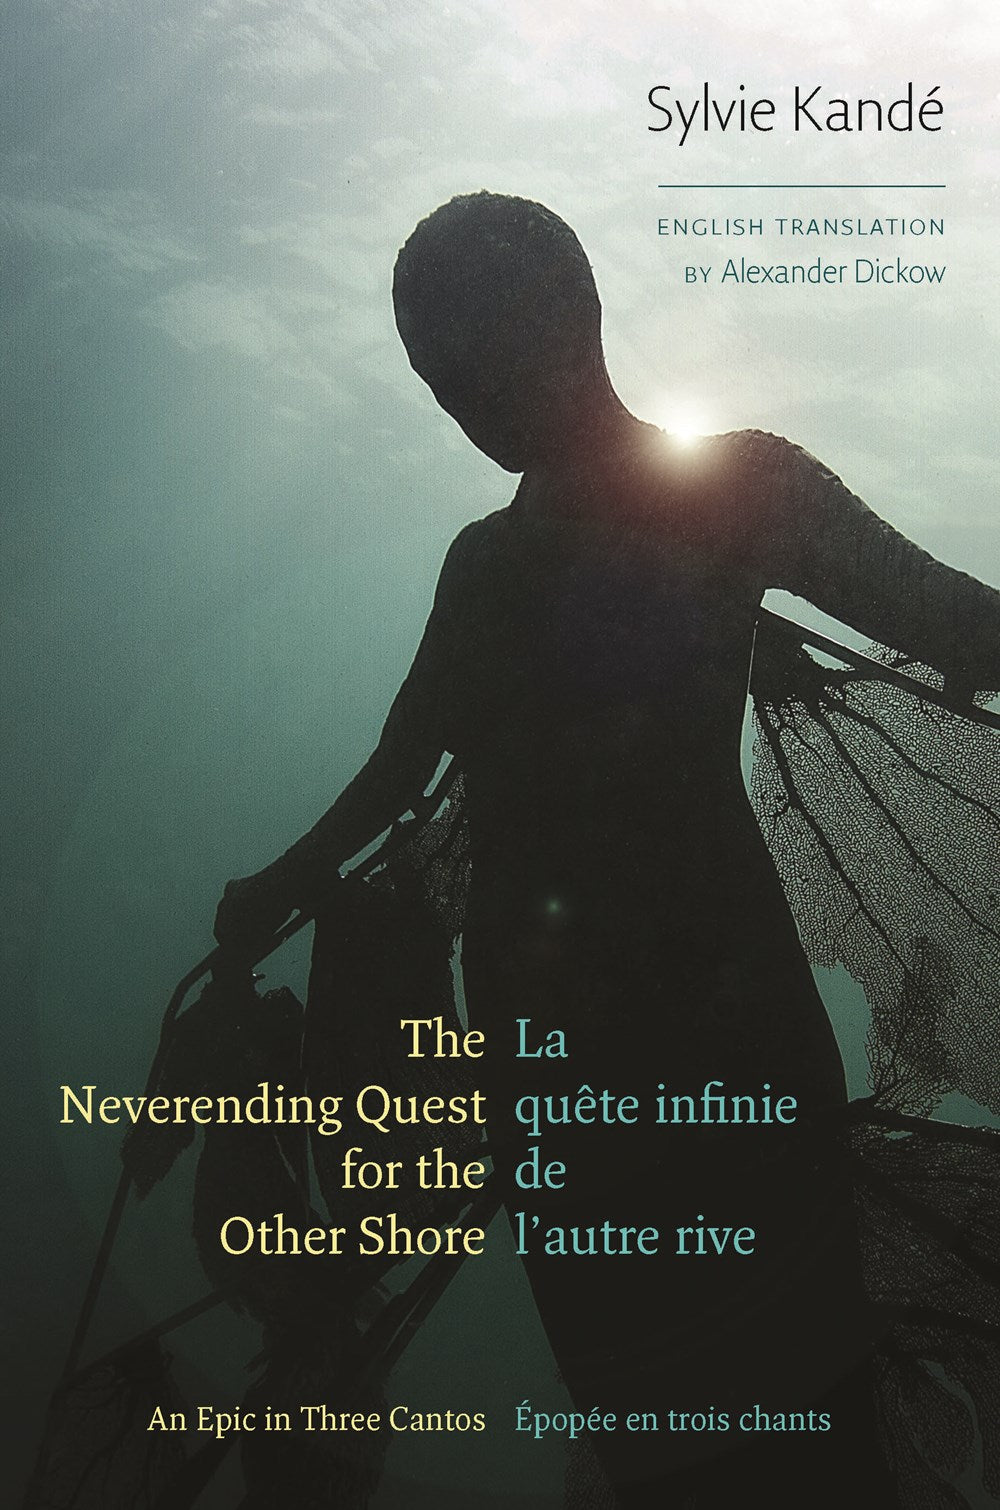 Kandé, Sylvie: The Neverending Quest for the Other Shore: An Epic in Three Cantos / La quête infinie de l'autre rive: Épopée en trois chants